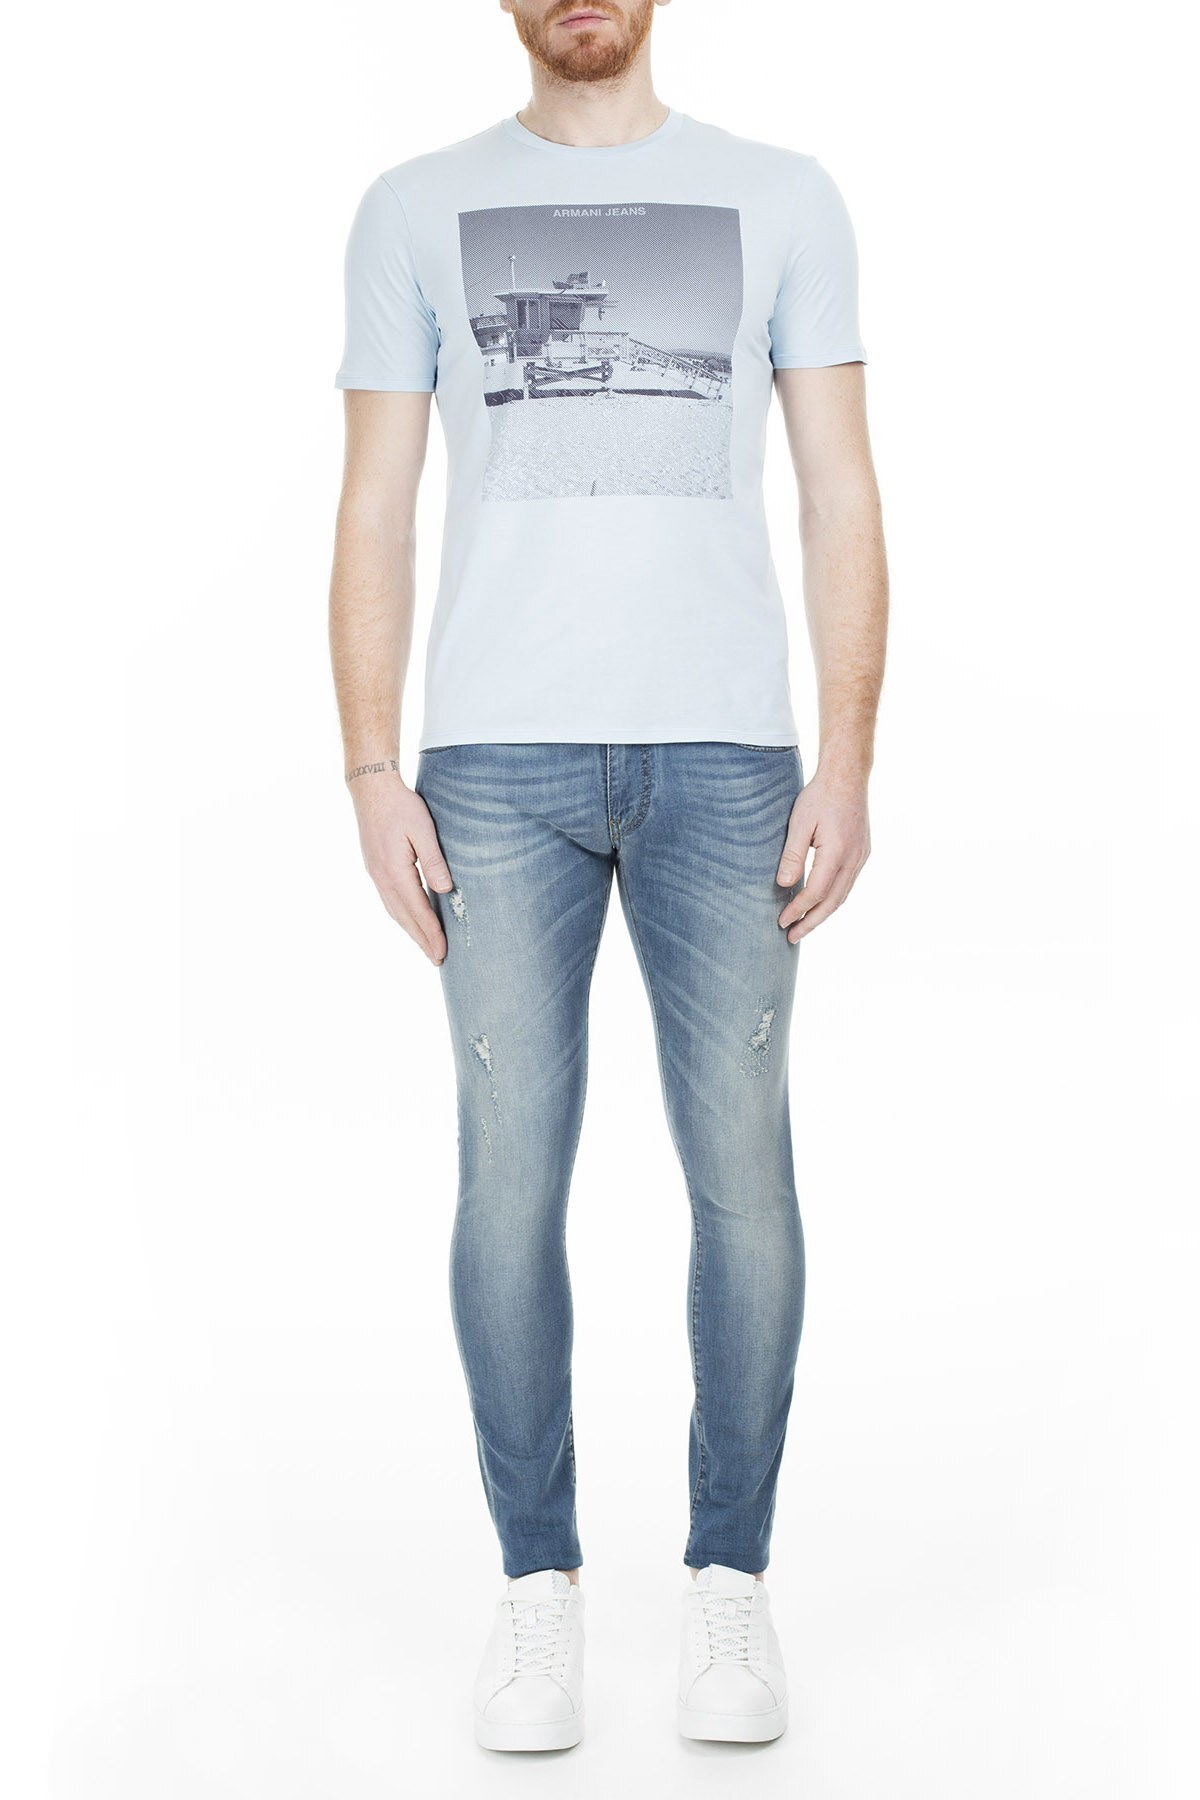 Armani Jeans Erkek Kot Pantolon 3Y6960 6D2CZ 1500 MAVİ